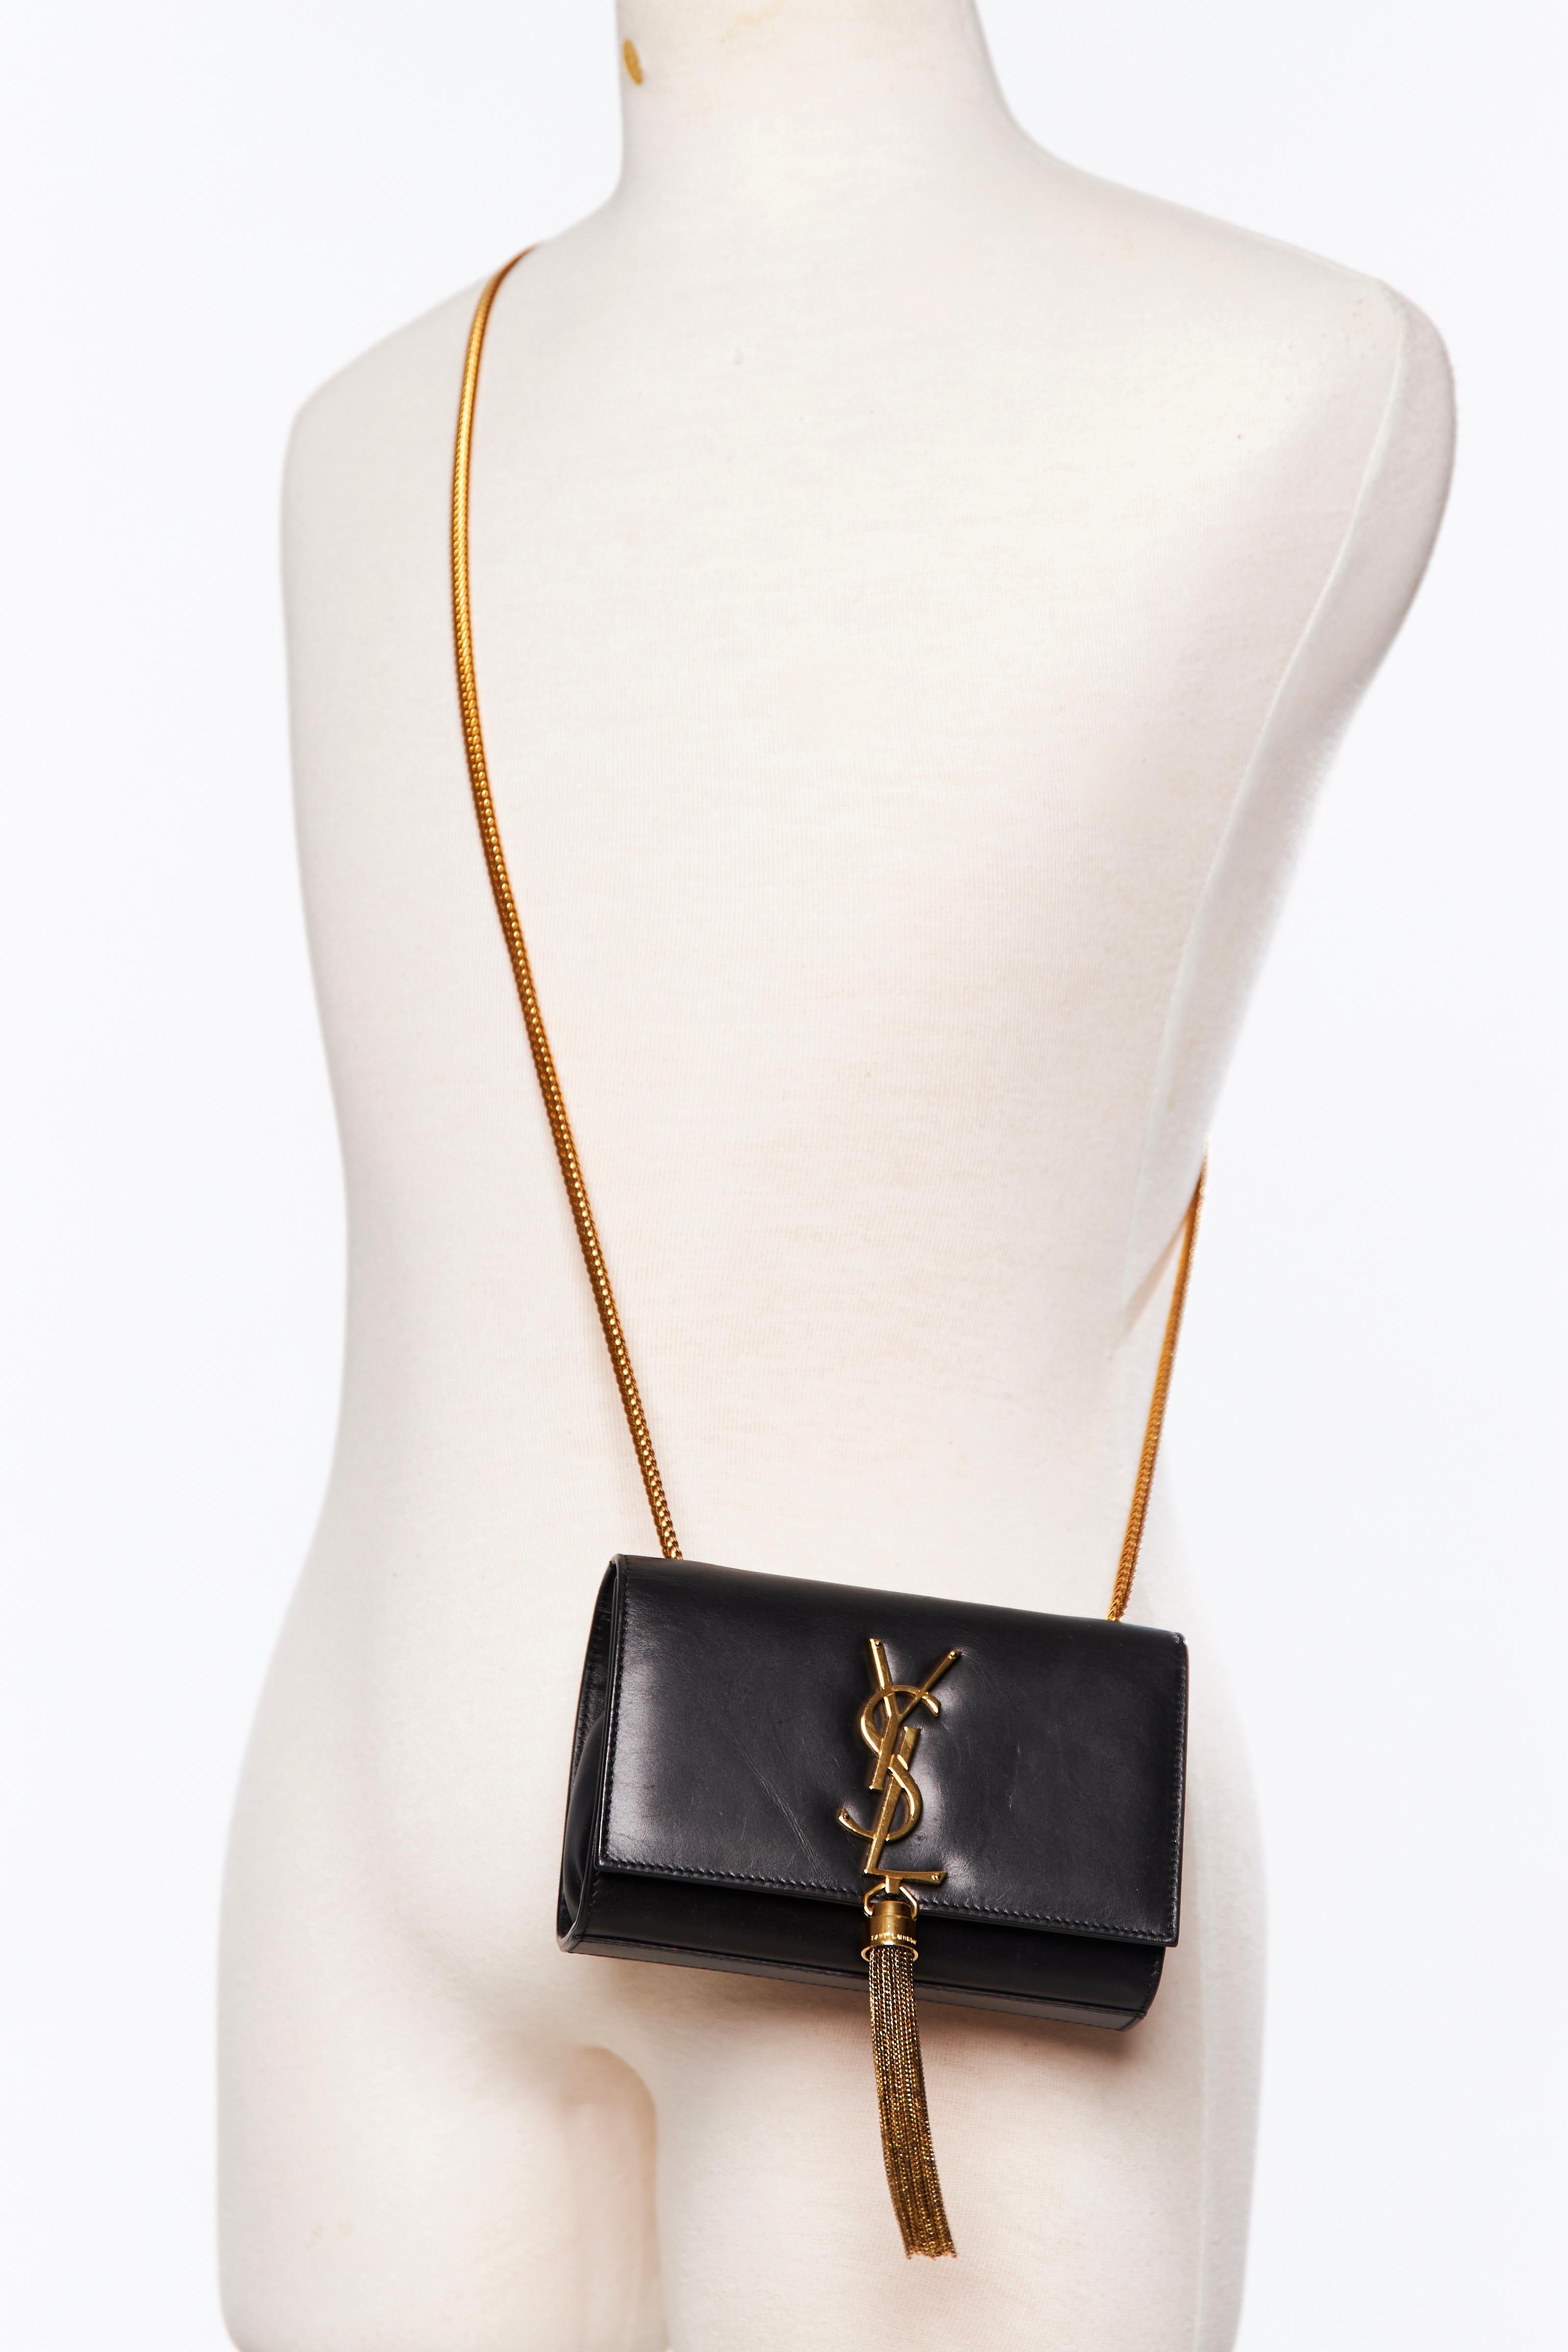 Diese Umhängetasche ist aus glattem Kalbsleder in Schwarz gefertigt. Die Tasche hat einen Schulterriemen aus goldenen Kettengliedern, ein passendes goldenes YSL-Logo, eine akzentuierte Quaste aus Kettengliedern, einen Überschlag, einen magnetischen